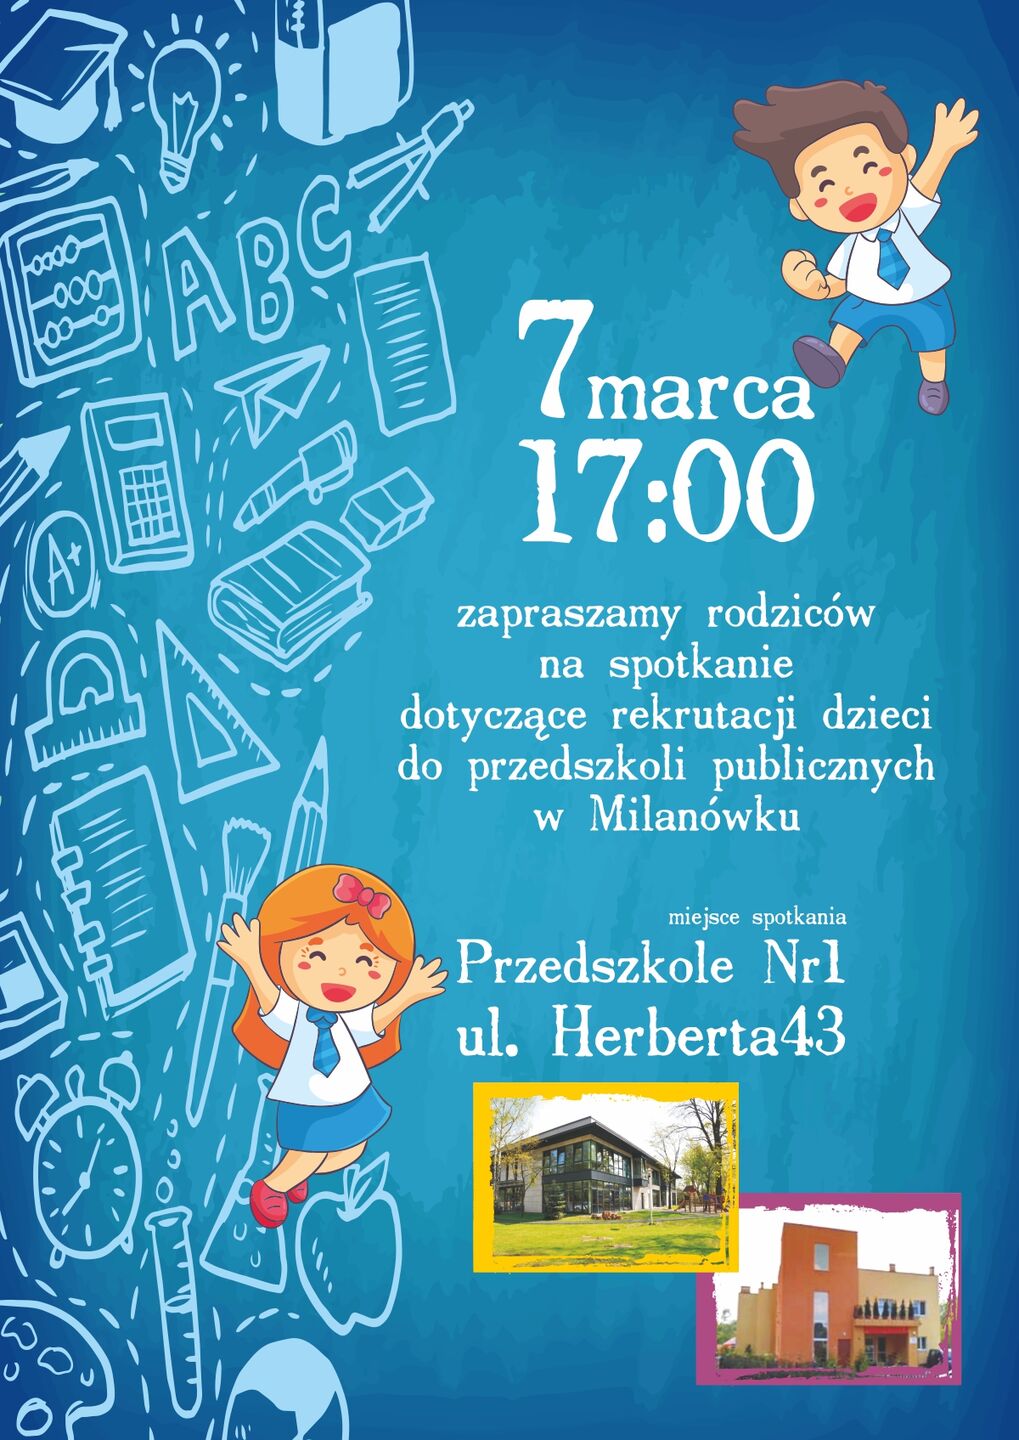 Plakat informujący o spotkaniu rekrutacyjnym w przedszkolu. dwójka dzieci na niebieskim tle i zdjęcie przedstawiające przedszkole